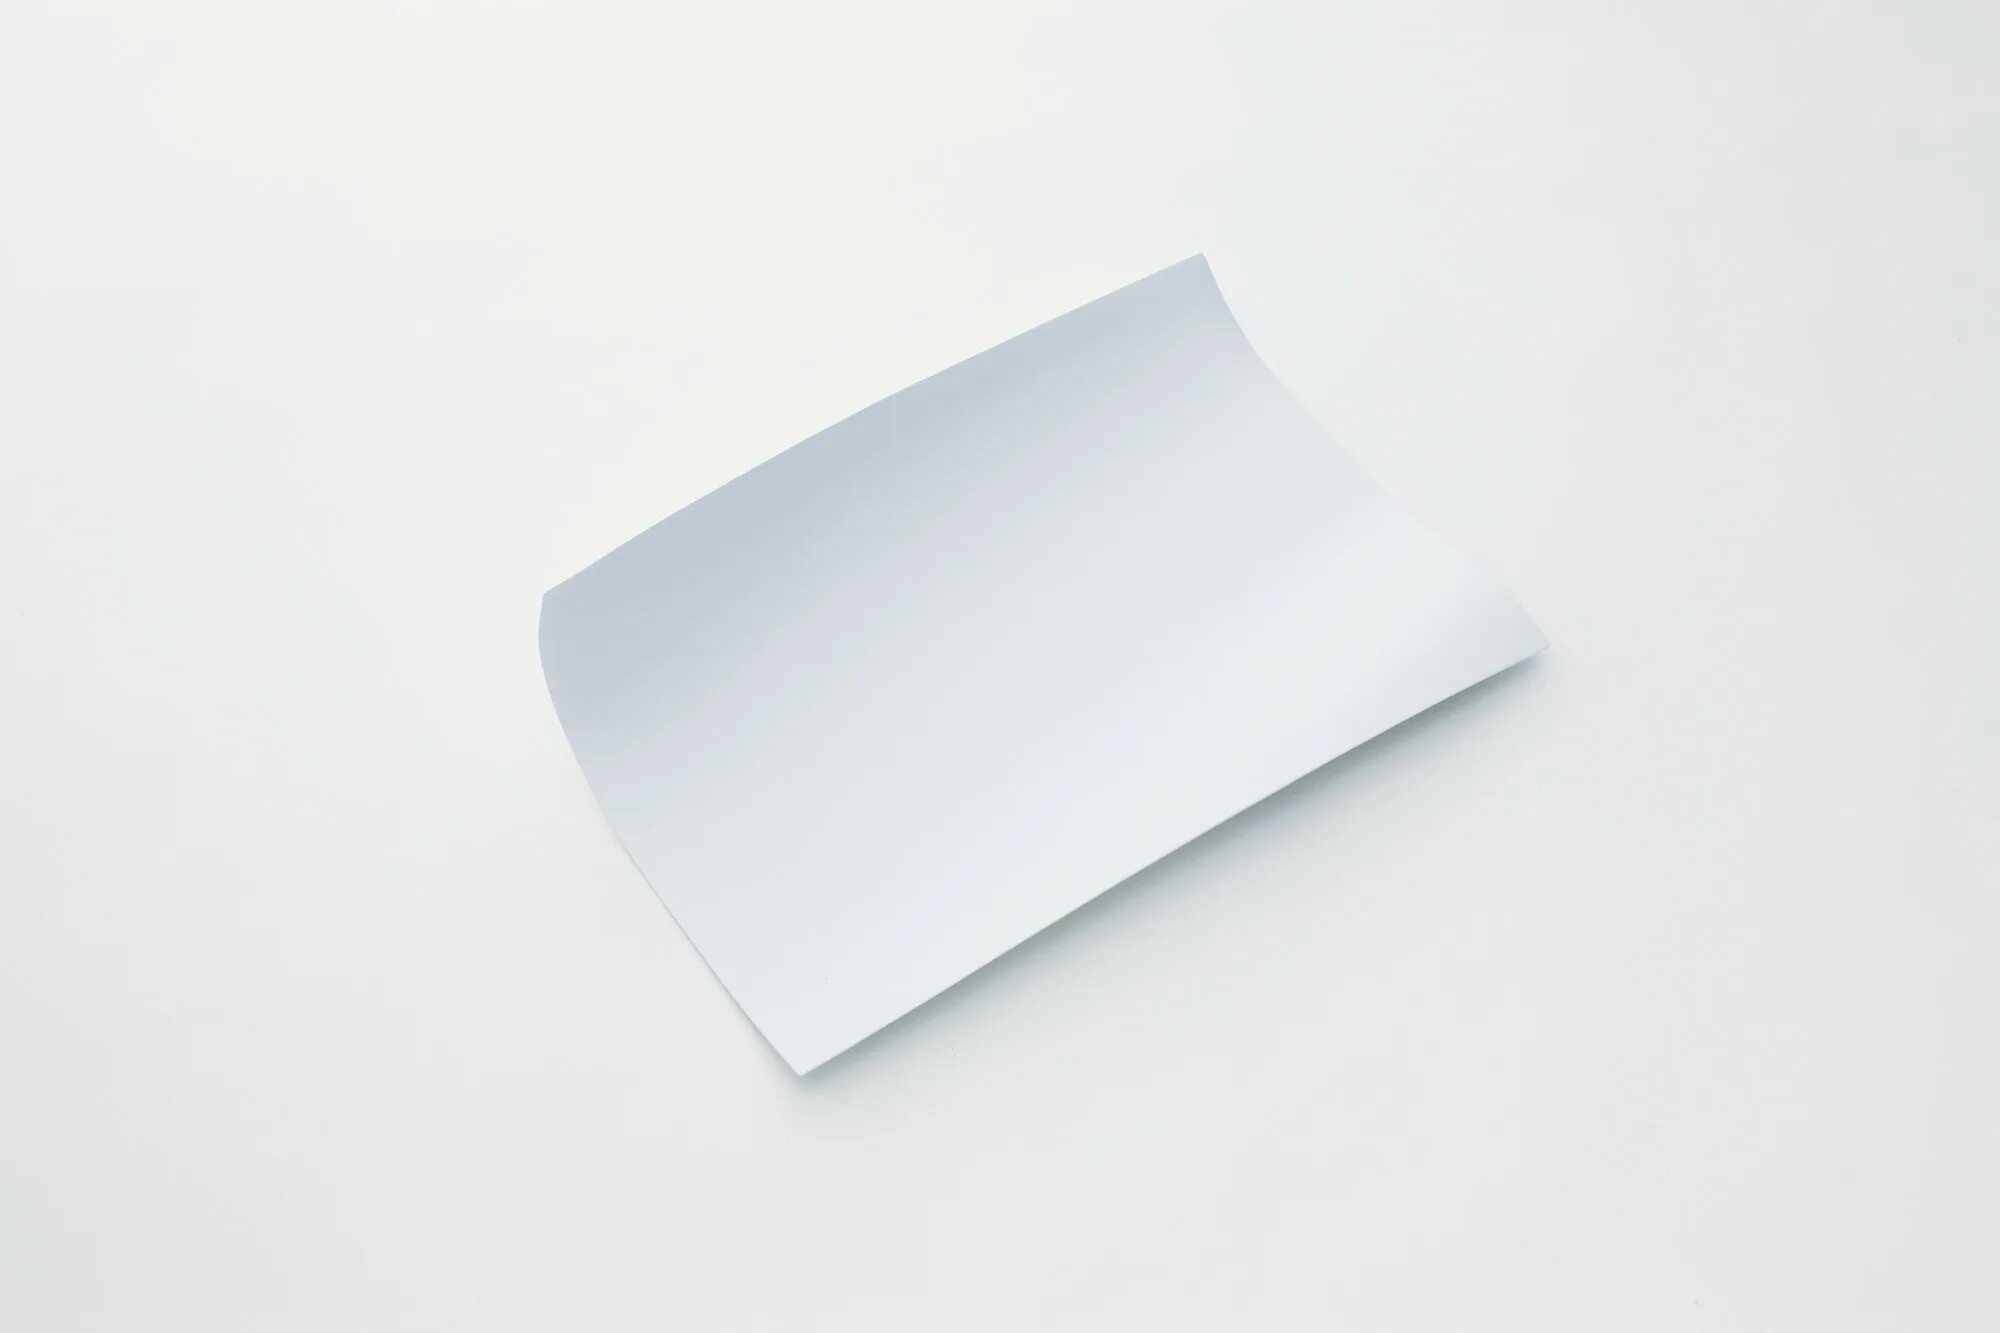 Лист бумаги. Белый лист бумаги. Лист бумаги на белом фоне. Бумажный лист. Проявляющая бумага